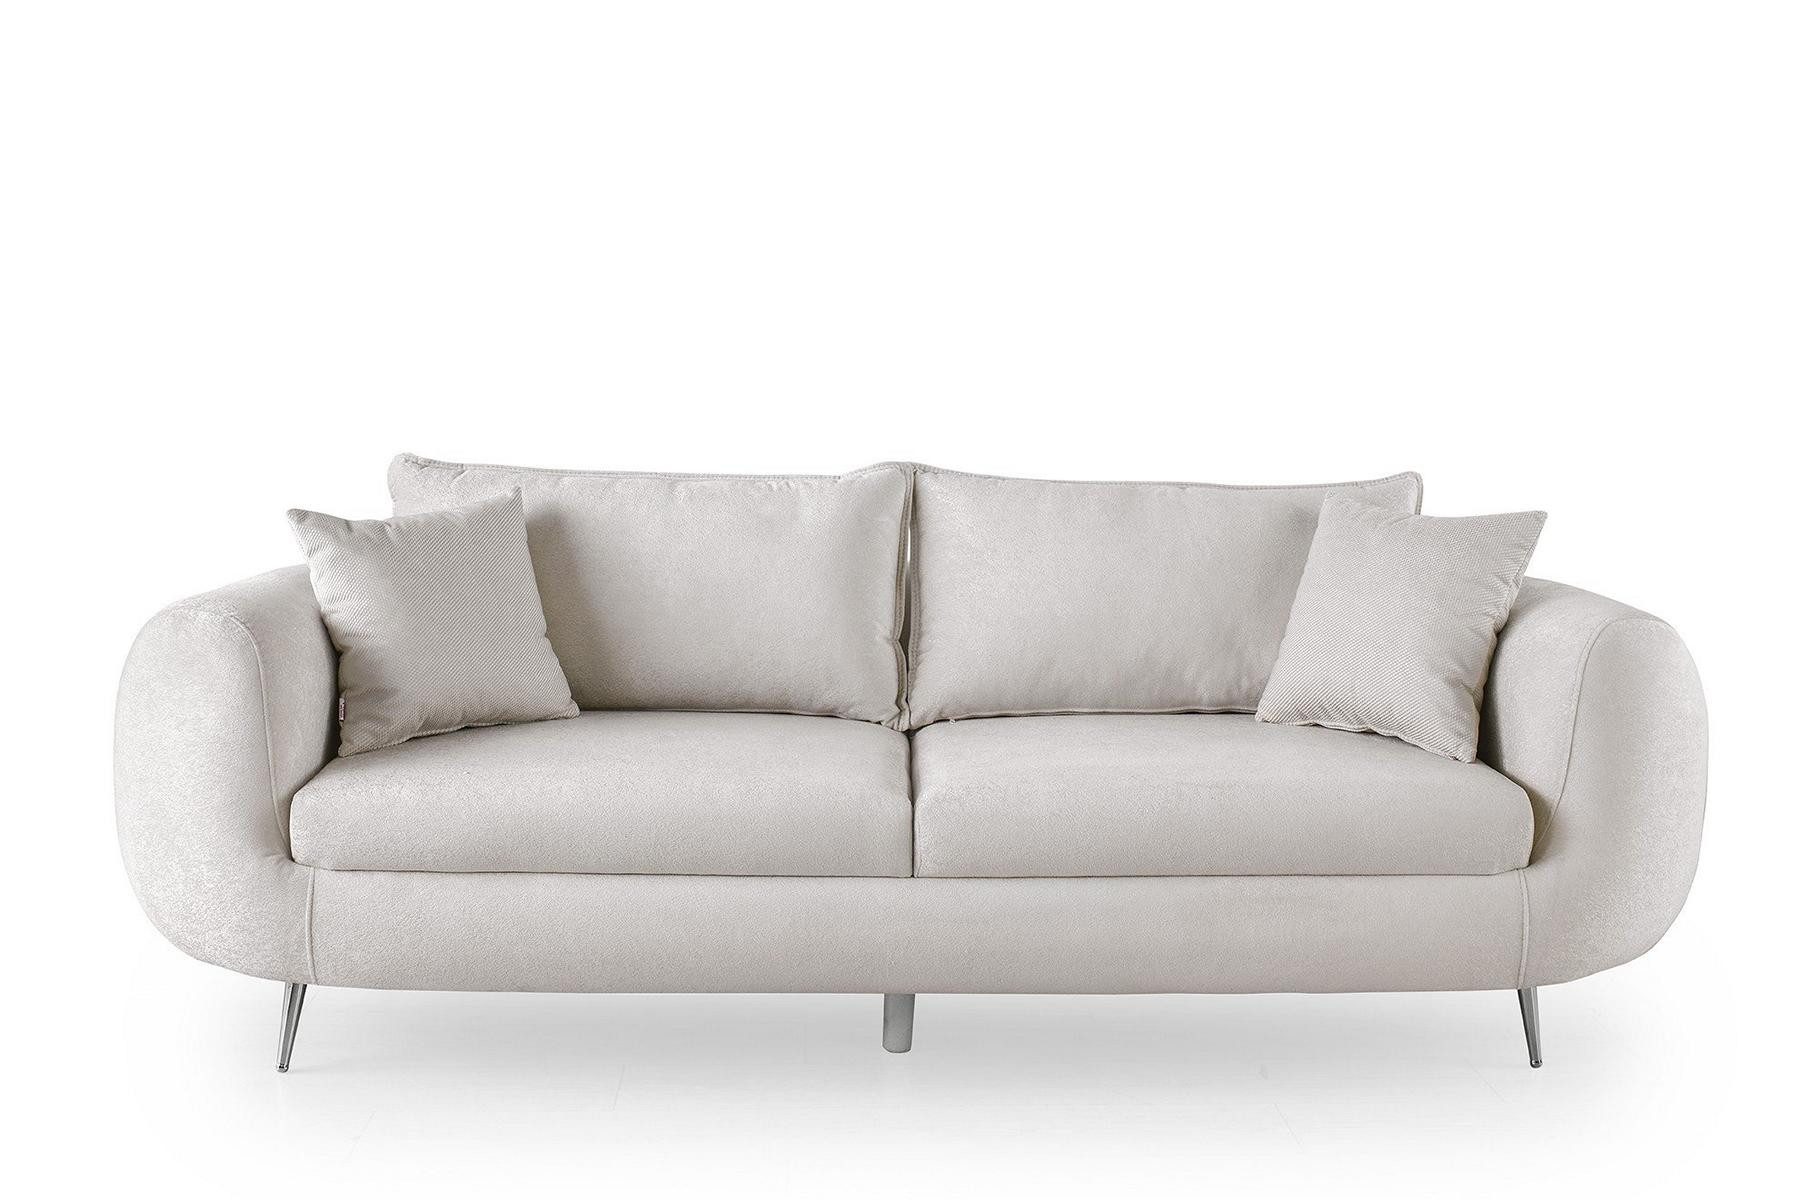 JVmoebel 3-Sitzer Dreisitzer Couch Moderne Polstersofa Sofa 3 Sitzer Weiß, 1 Teile, Made in Europa